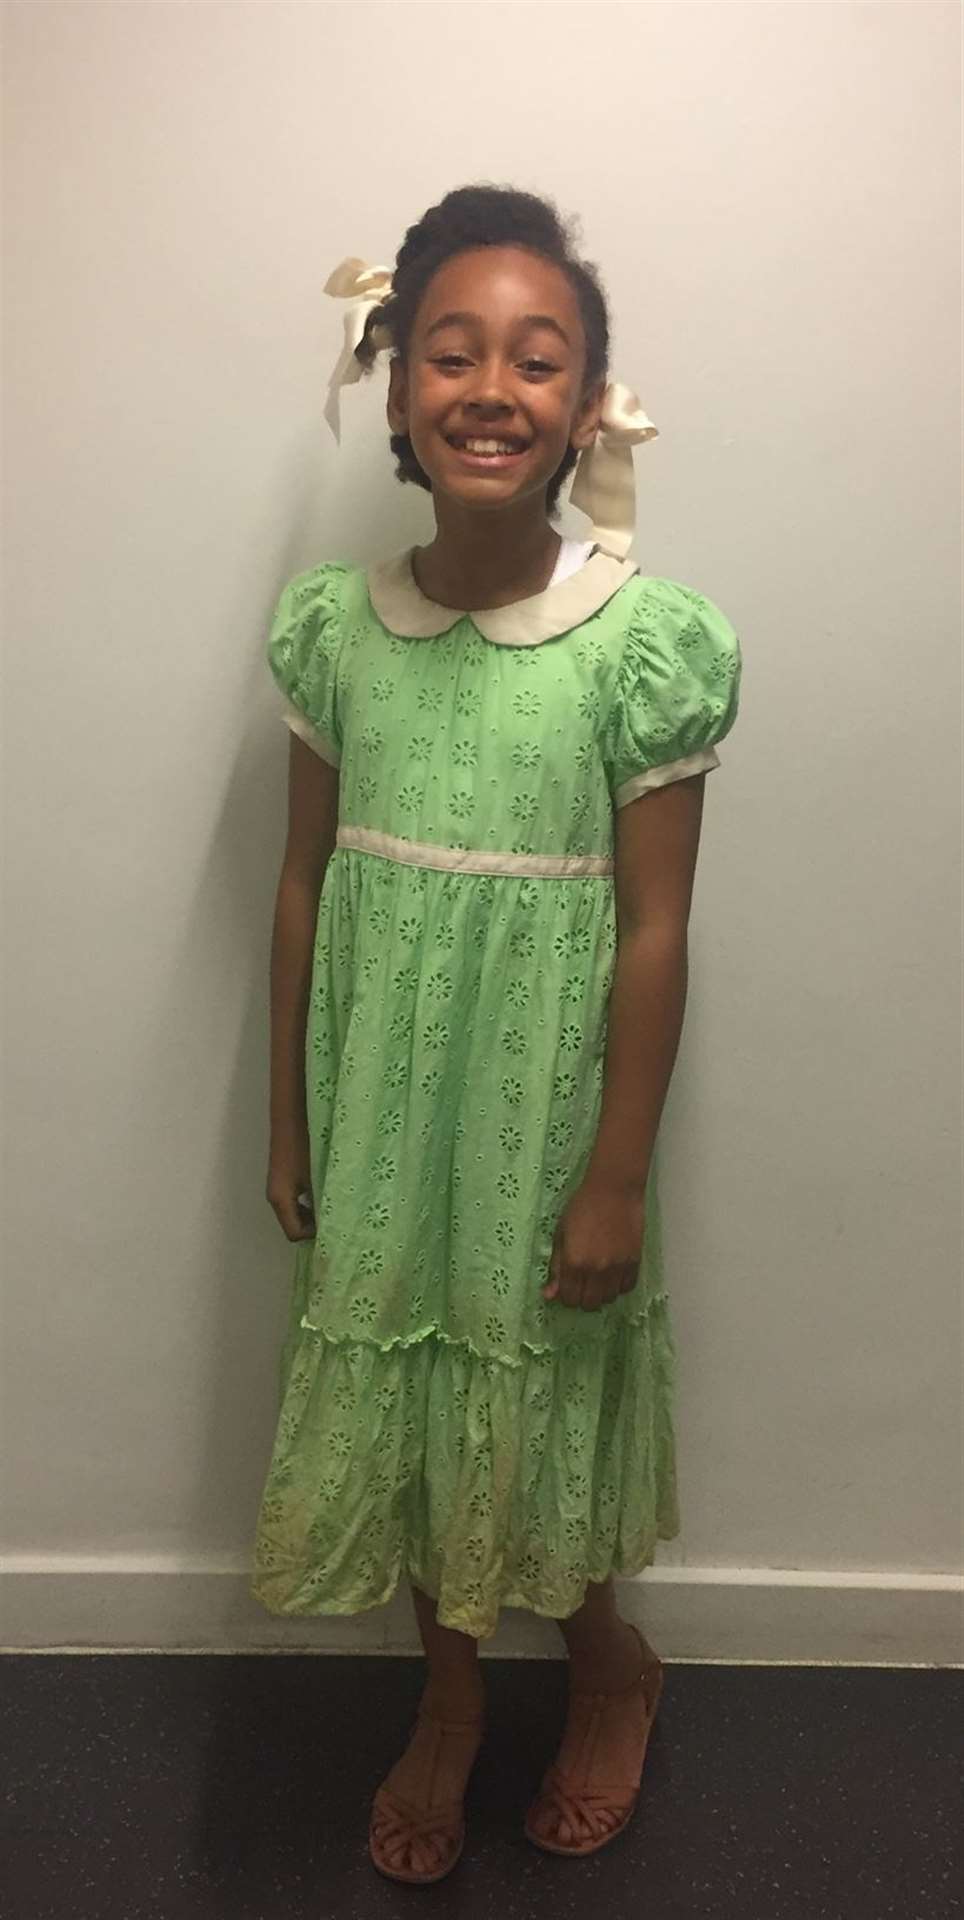 Keira in her costume as 'Little Hortense' (37190368)